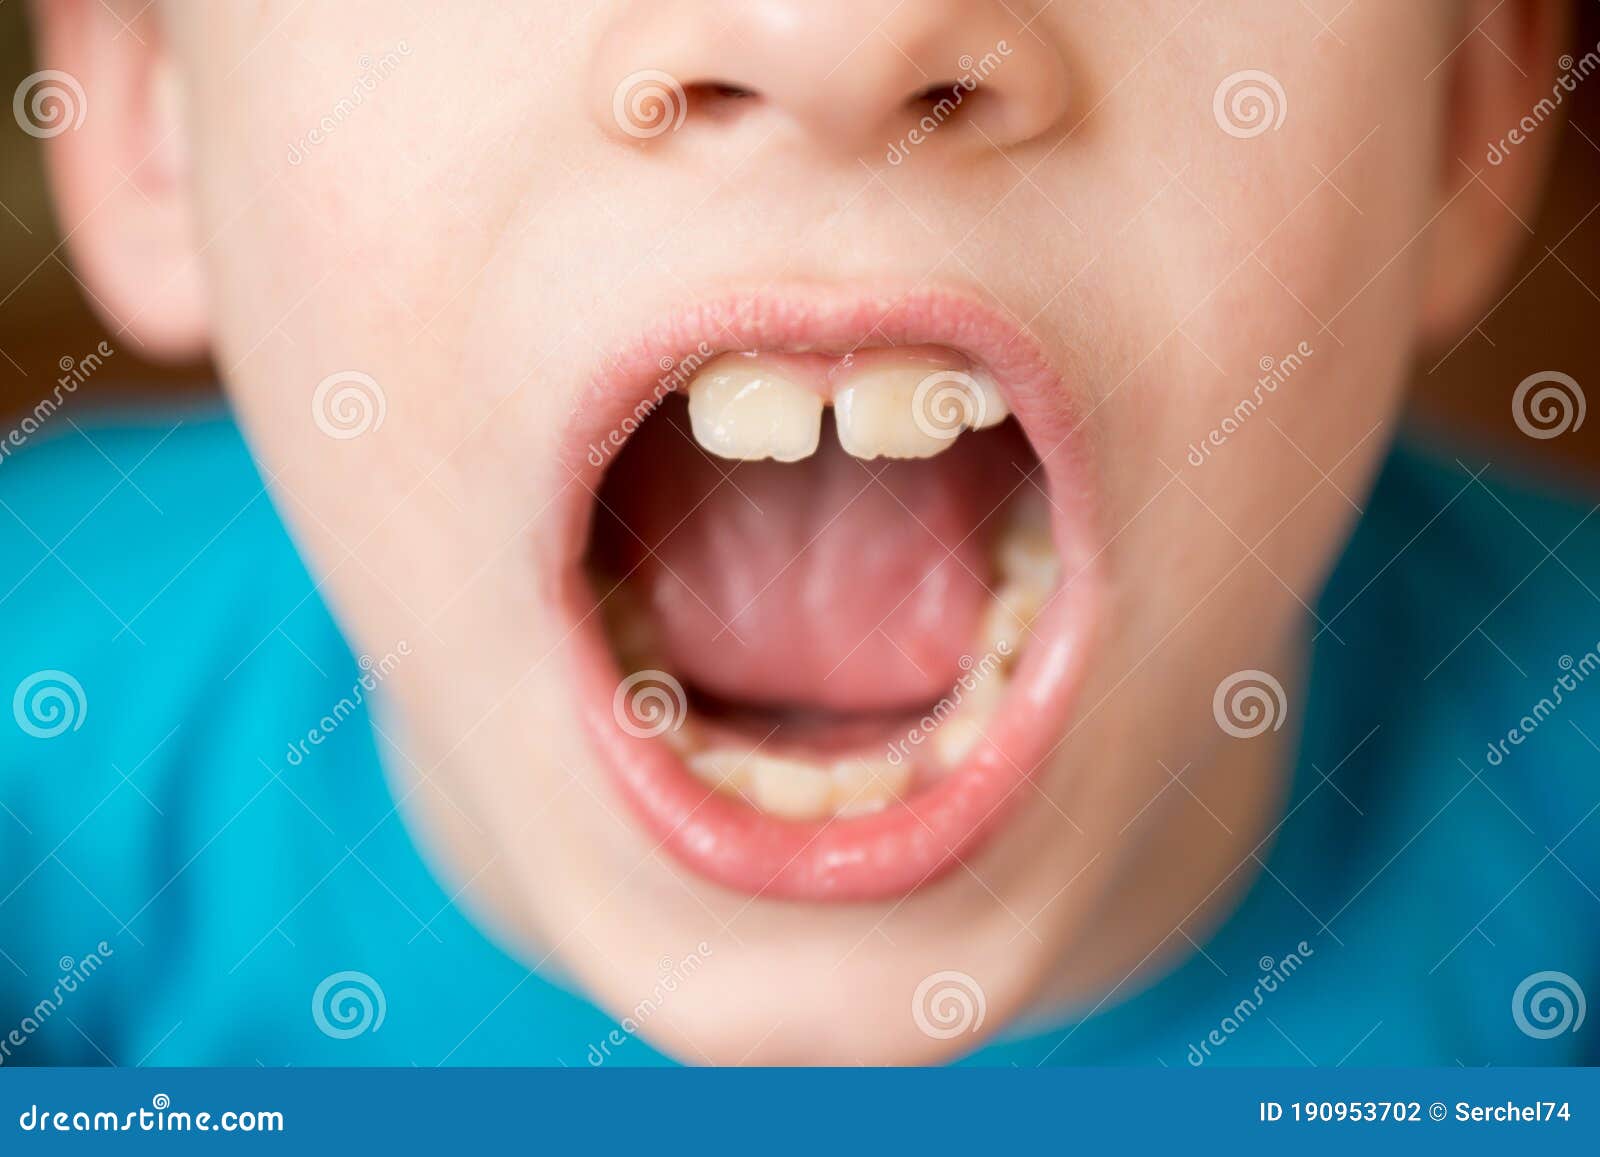 Мальчик открывающий рот. Мальчики с открытыми ртами. Мальчик открыл рот. Маленький мальчик с открытым ртом.